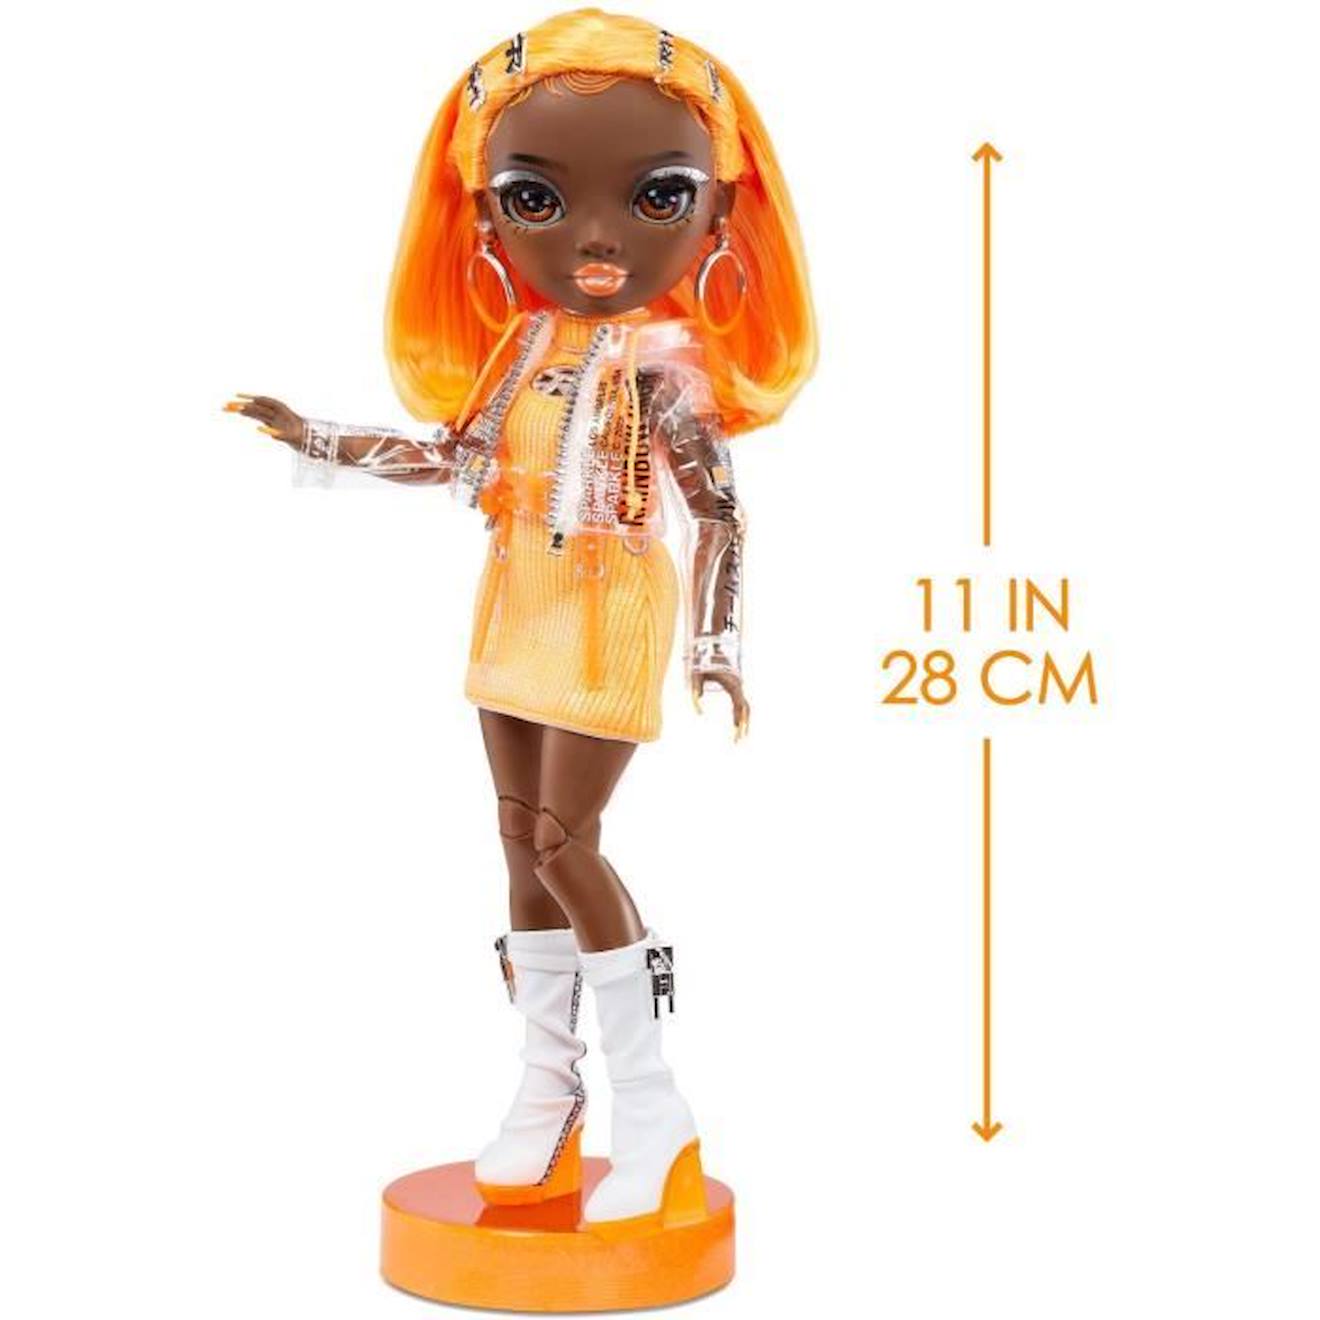 Rainbow High S23 Fashion Doll - Poupée 27 cm Michelle St Charles (Orange  Fluo) - 1 tenue, 1 paire de chaussures et des accessoires orange - Rainbow  high